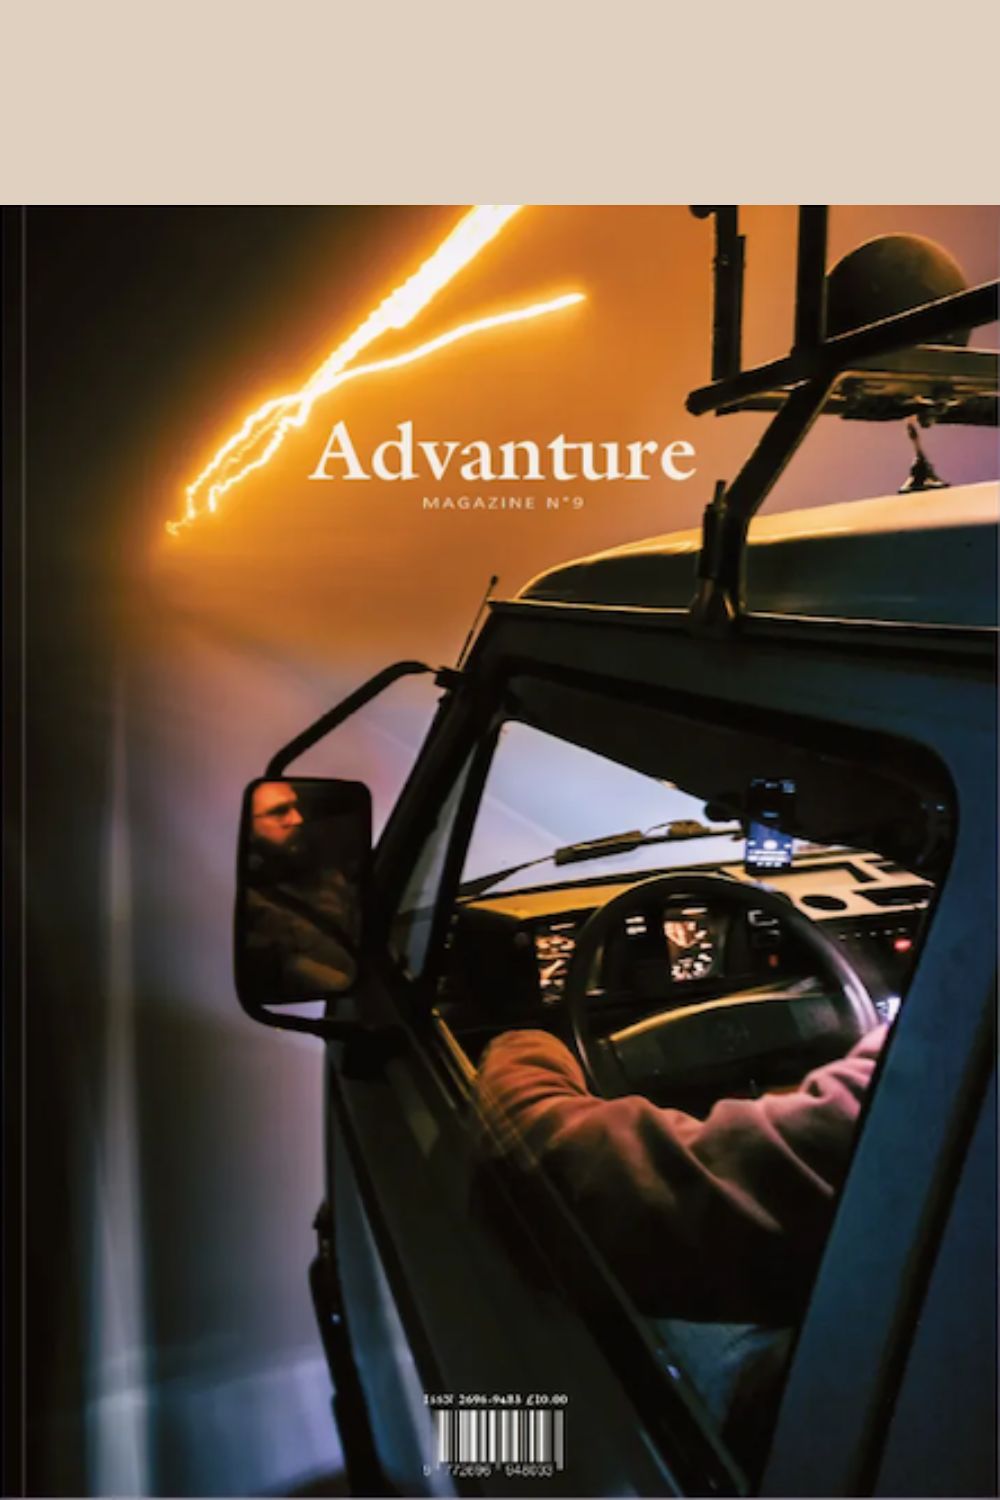 Advanture Magazine No. 9 cover